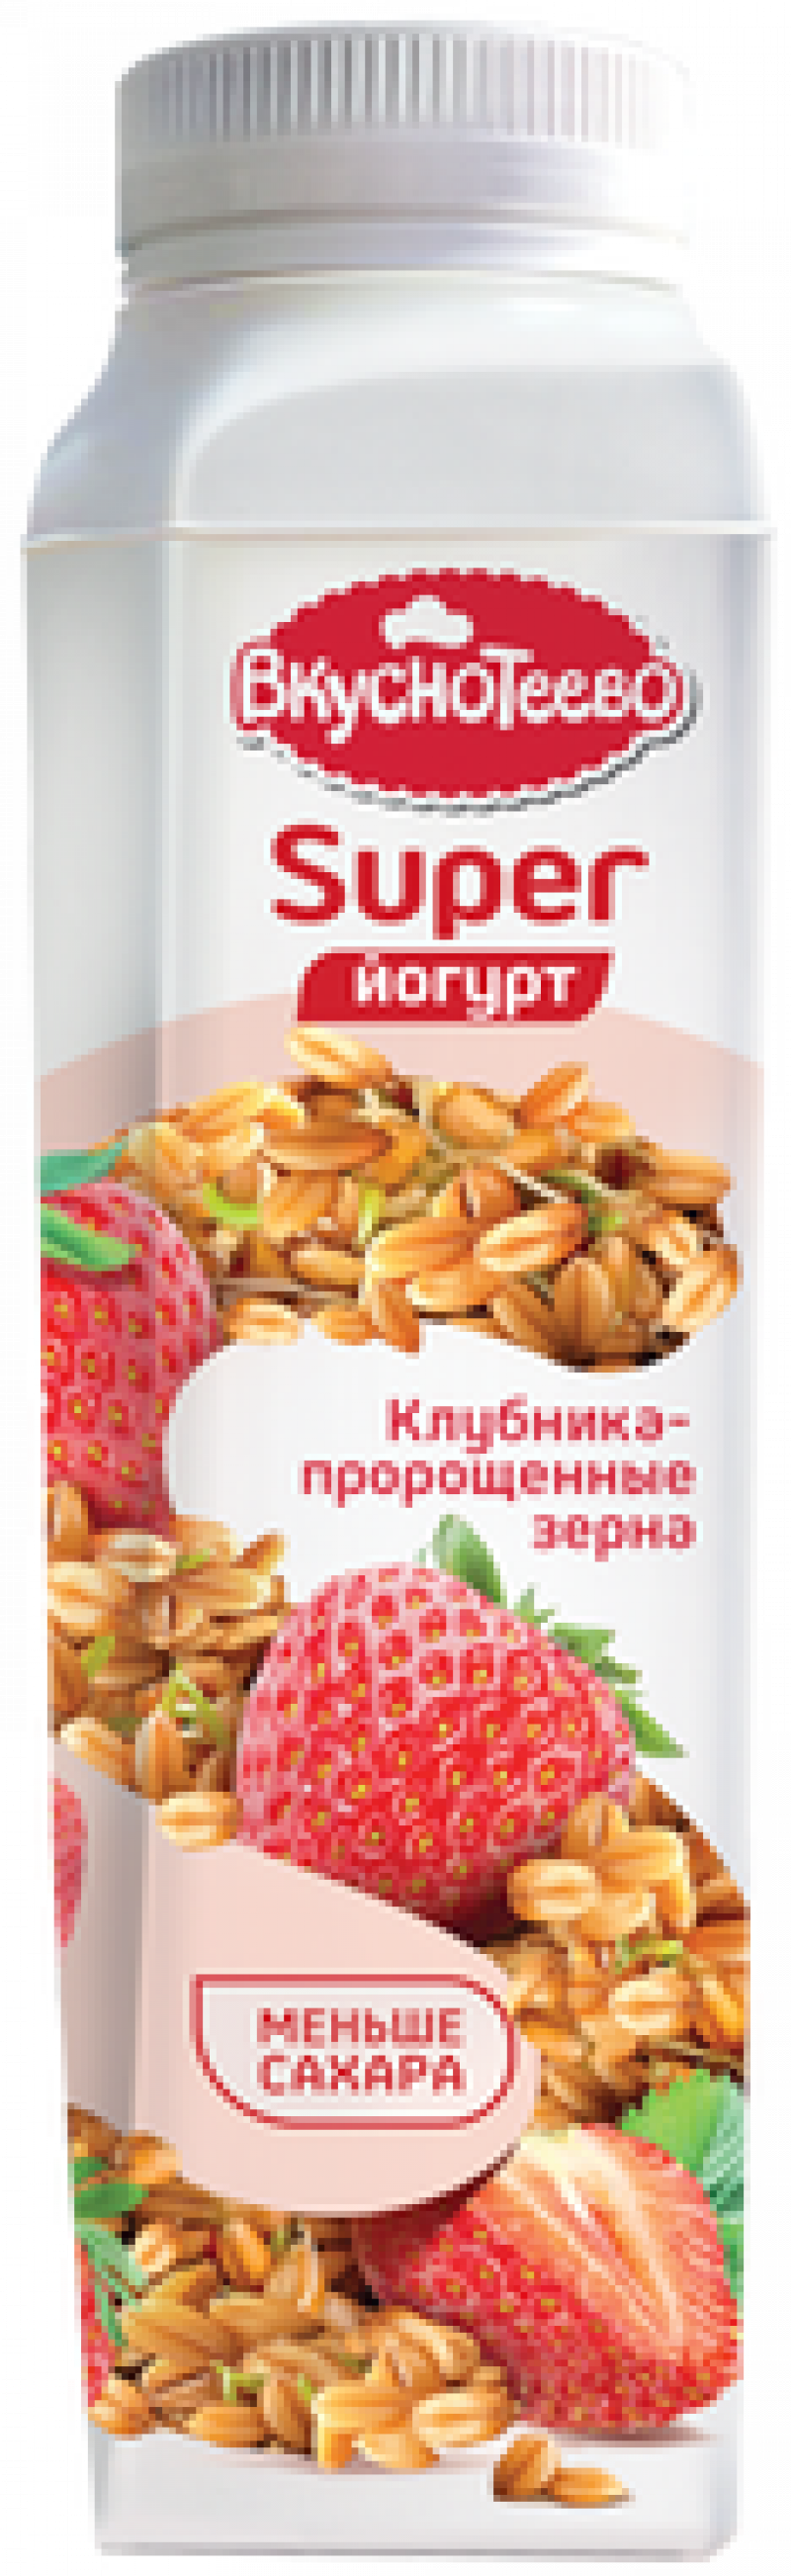 Йогурт питьевой ТМ Вкуснотеево Super Клубника - пророщенные зерна 1,3% 320г